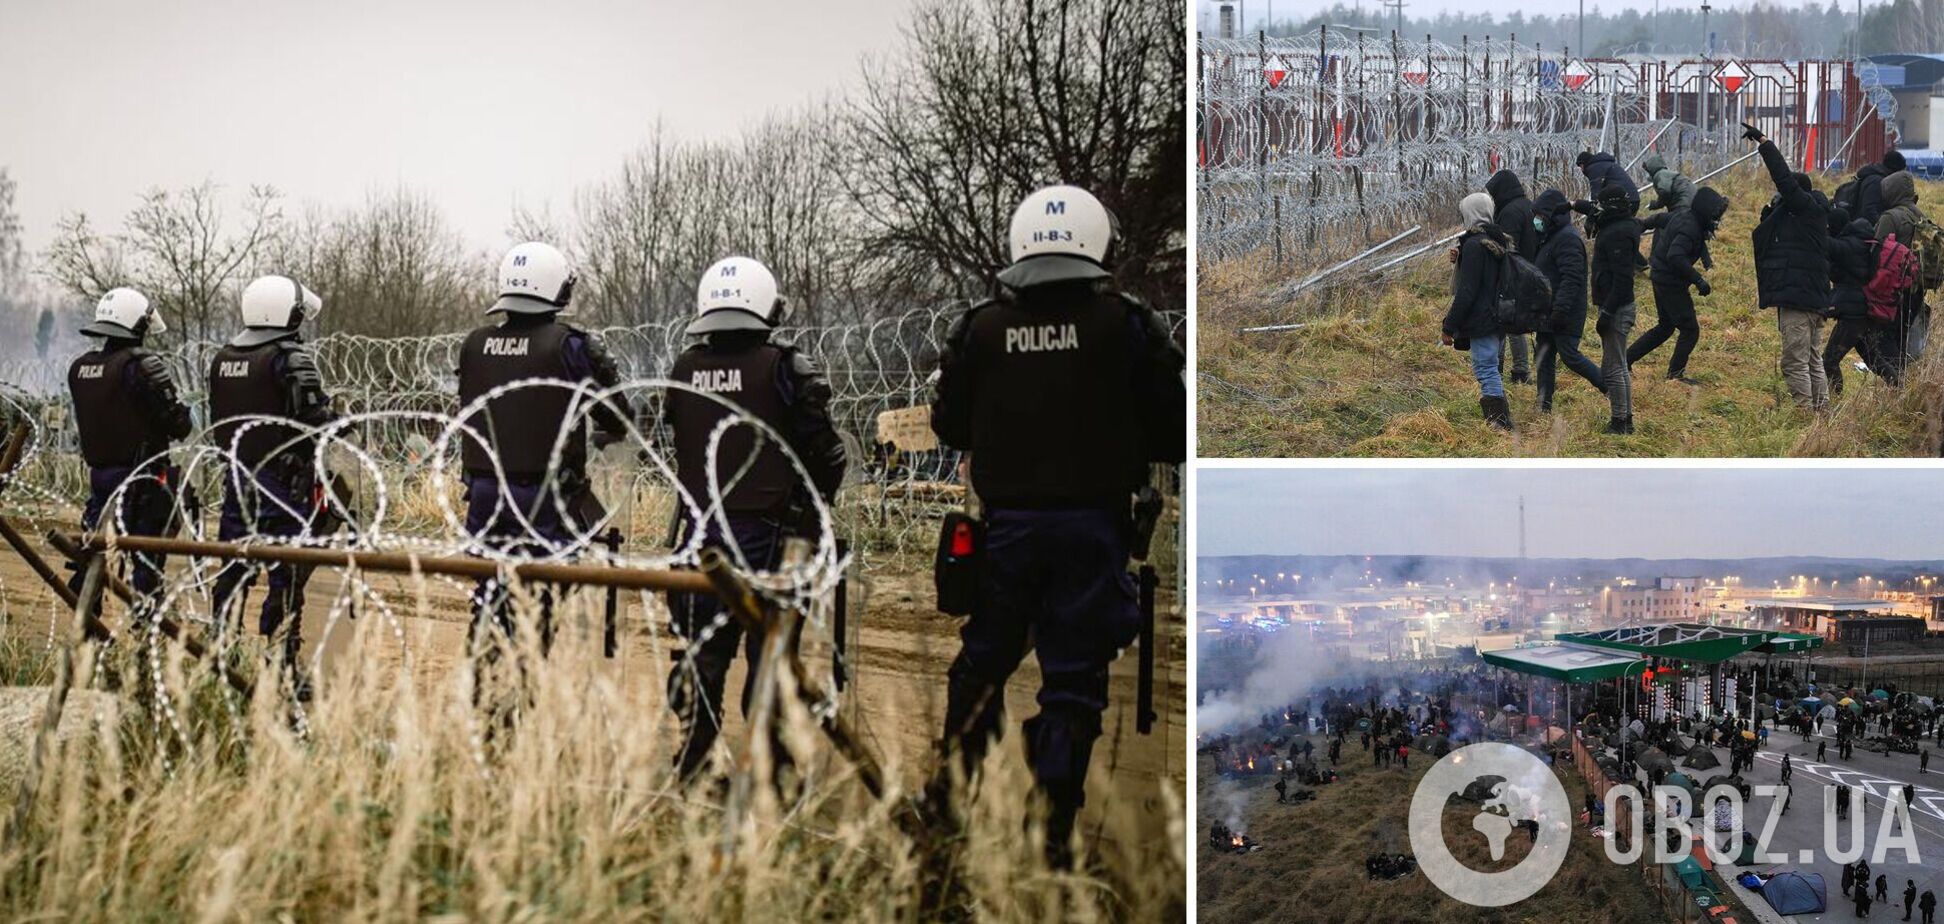 Мигранты разбили новый лагерь возле КПП, а в Варшаве ответили на шантаж Лукашенко: что происходит на границе стран